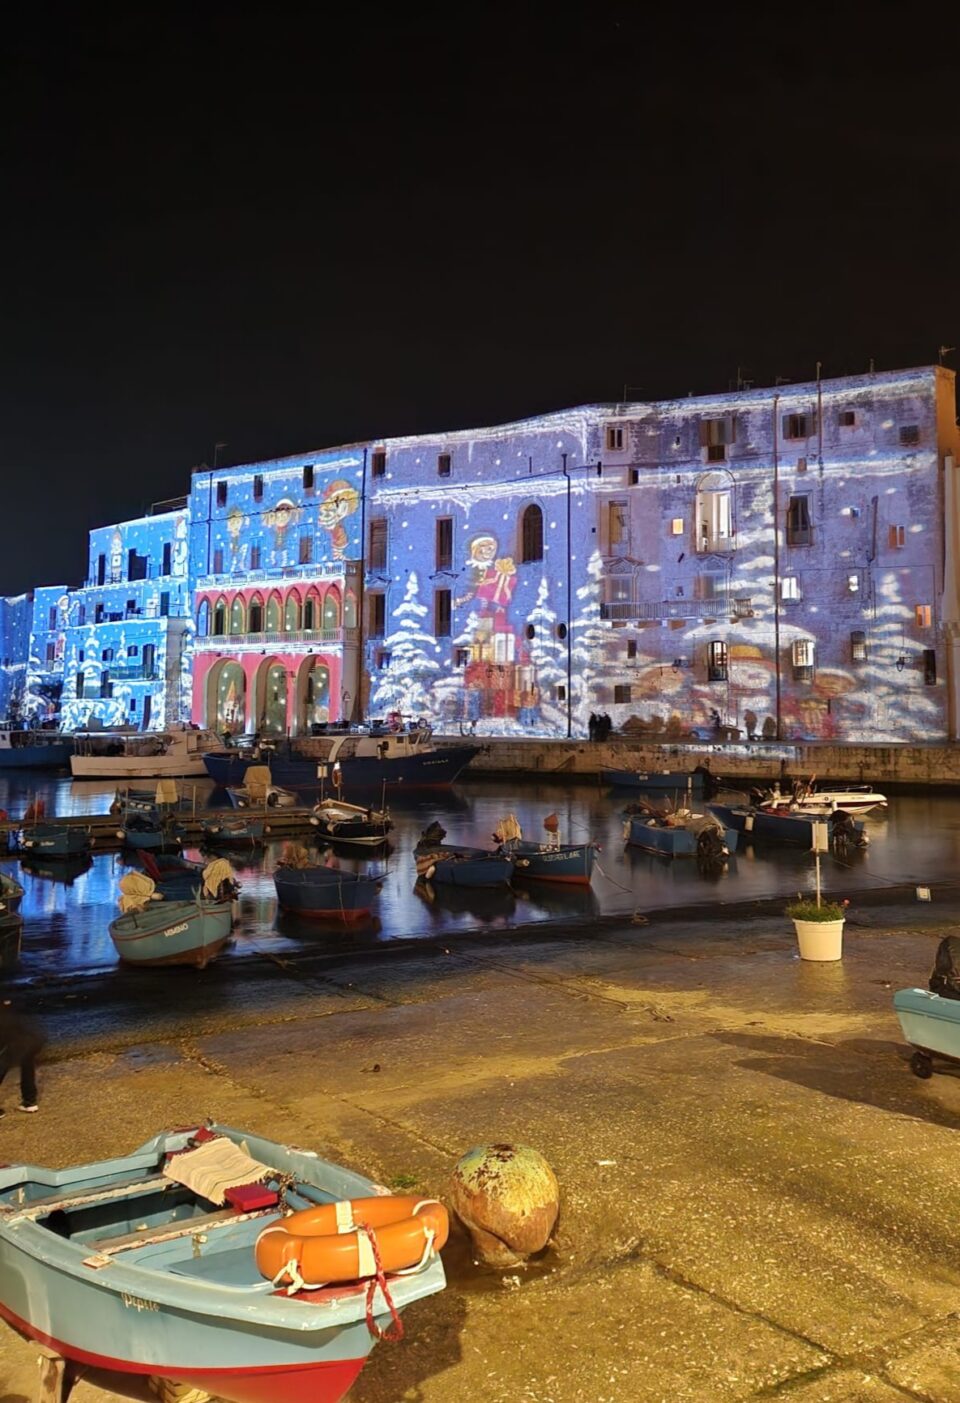 Un magico Natale al porto vecchio di Monopoli